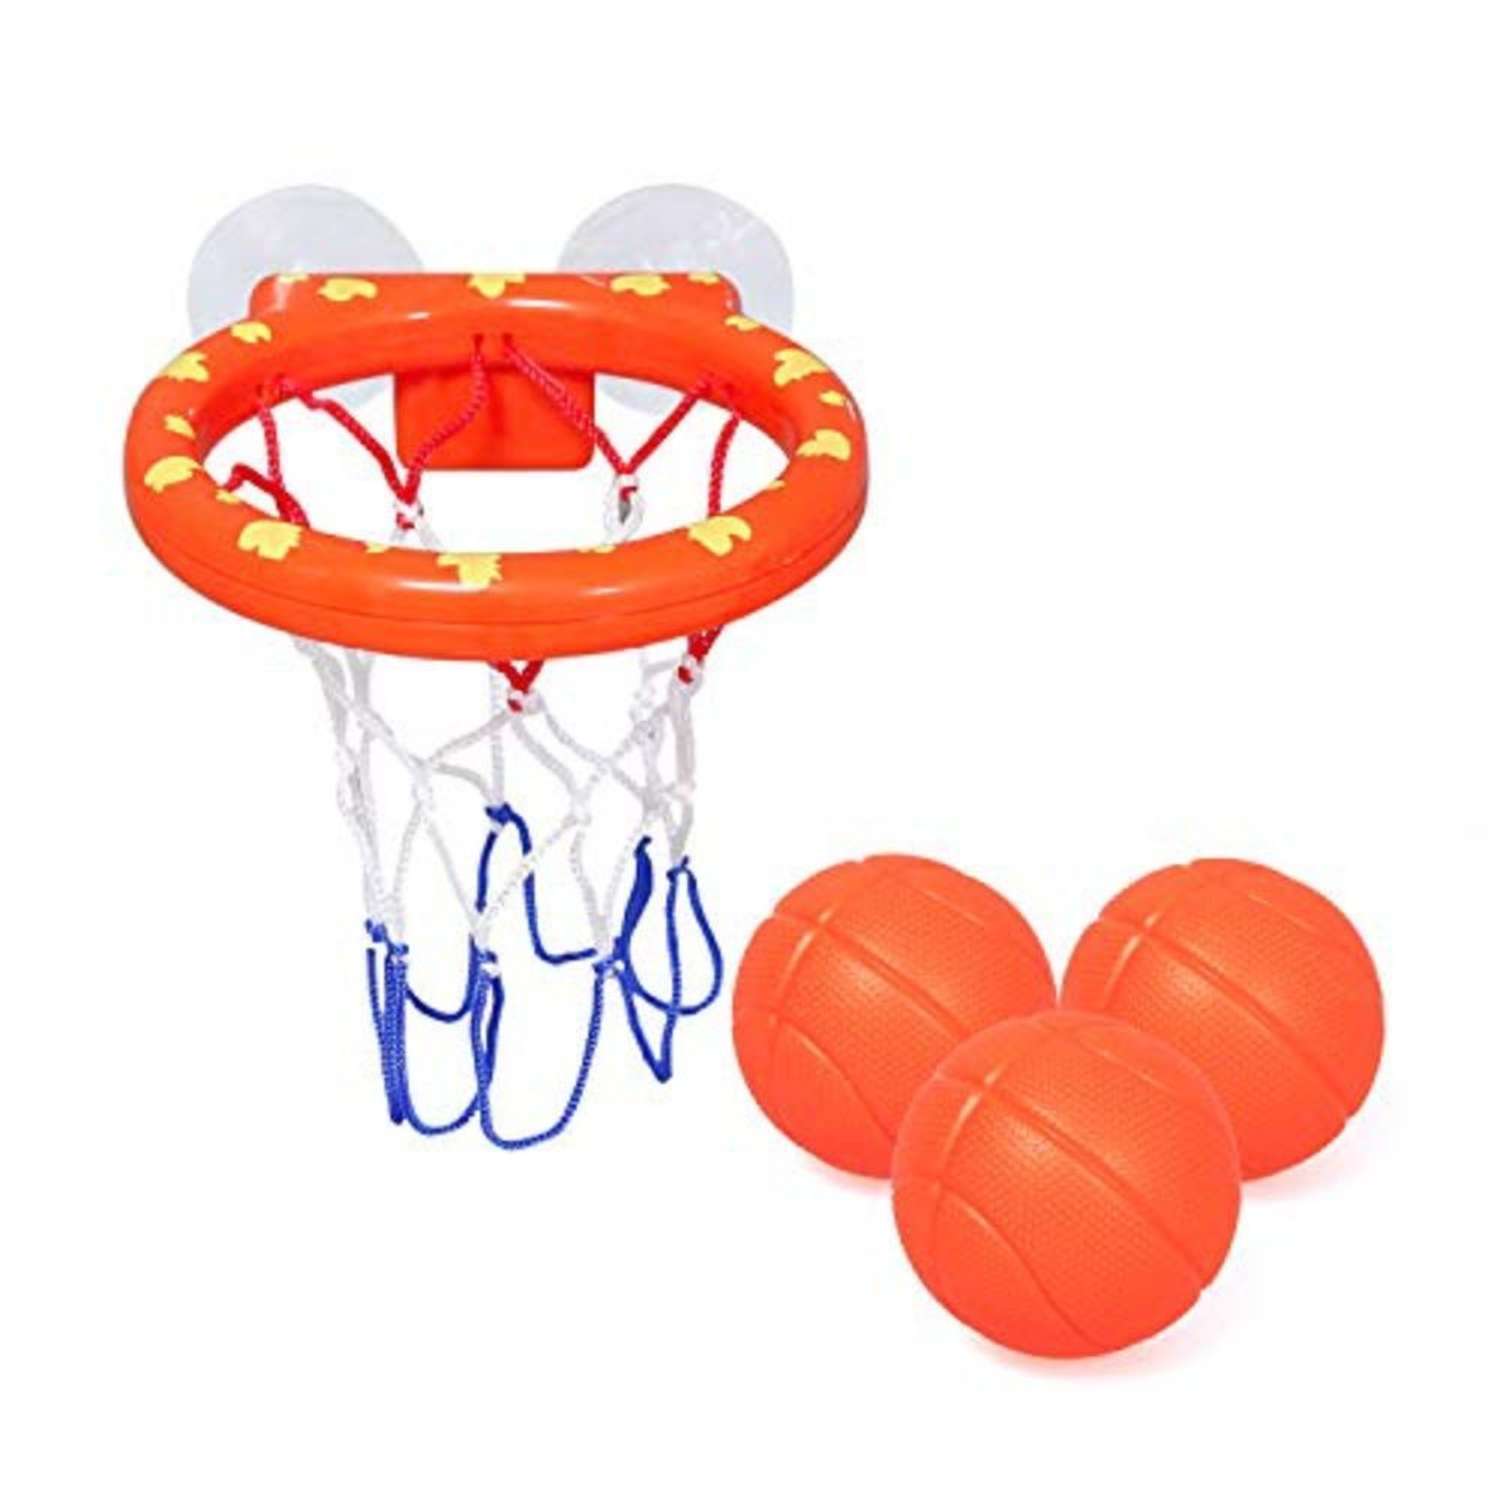 Игрушка для купания в ванной MagicStyle баскетбольное кольцо на присосках 3 мяча - фото 1